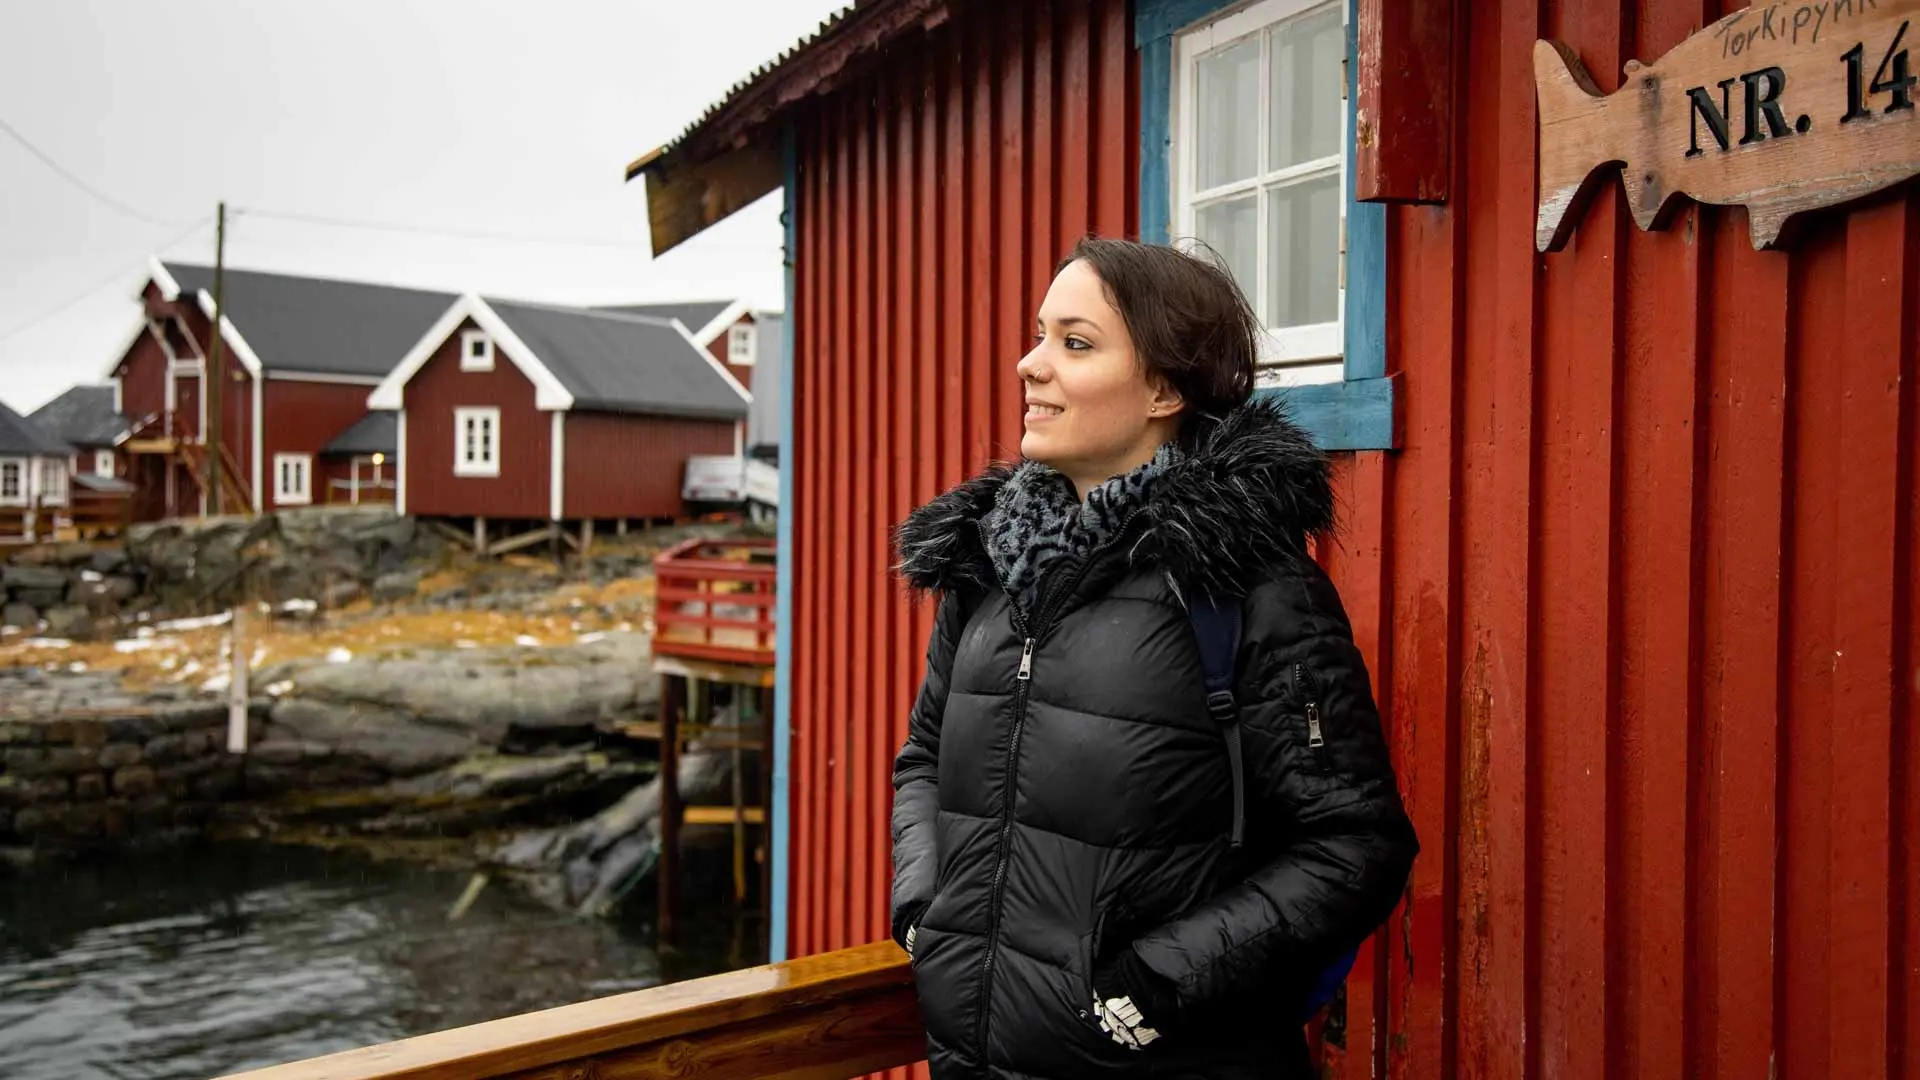 Uno de los espectáculos de la naturaleza más mágicos. Disfruta de un viaje en grupo por una región increíble de Noruega llamada las islas Lofoten.